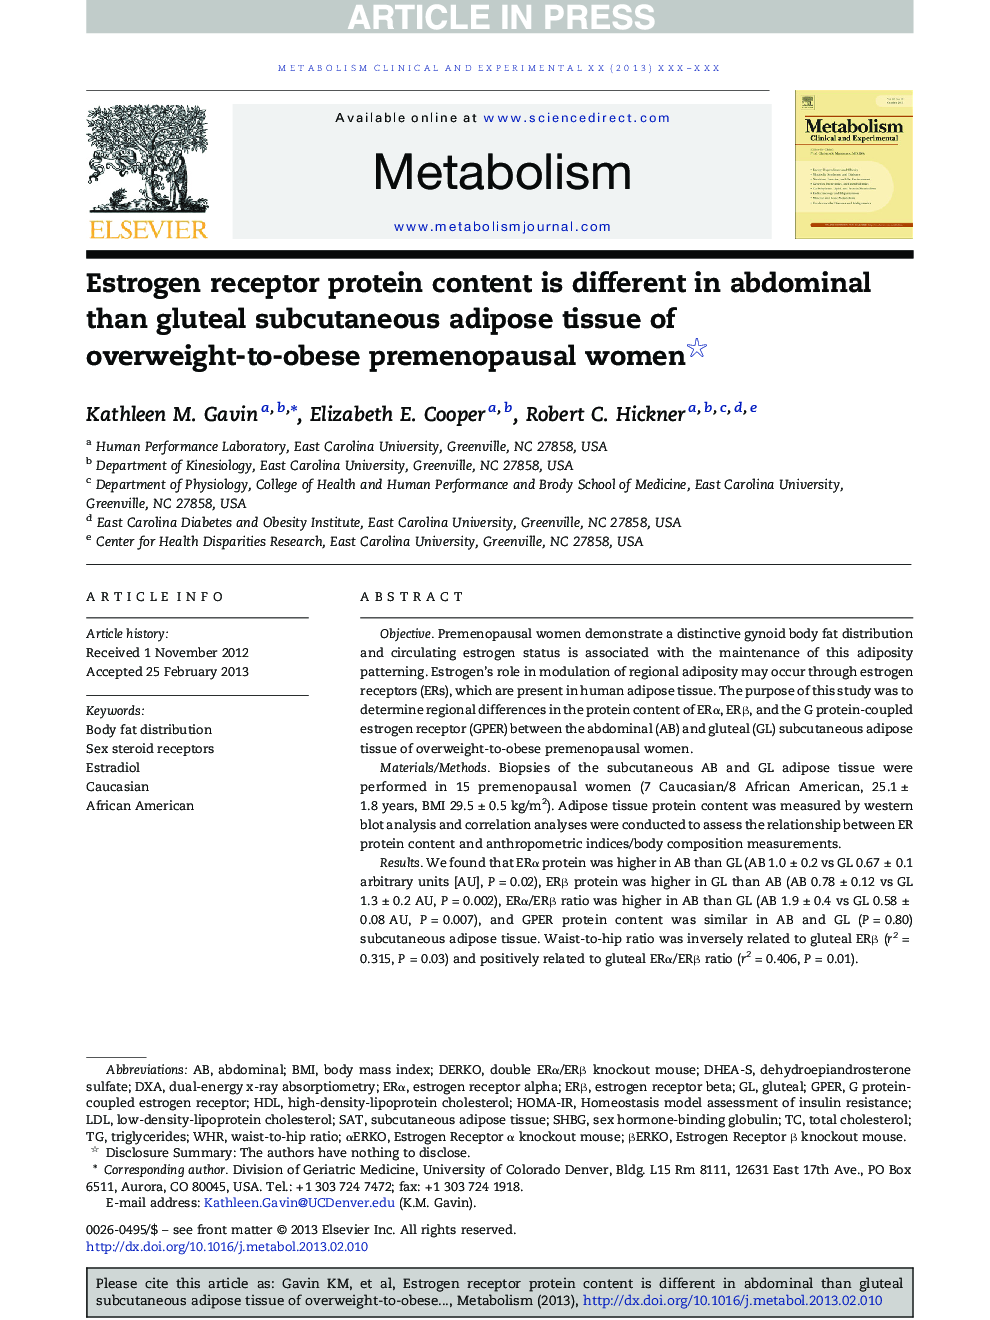 محتوای پروتئین گیرنده استروژن در شکم نسبت به بافت چربی زیر پوستی شکم و پهلو از زنان پیش از یائسگی دارای اضافه وزن تا چاقی متفاوت است 